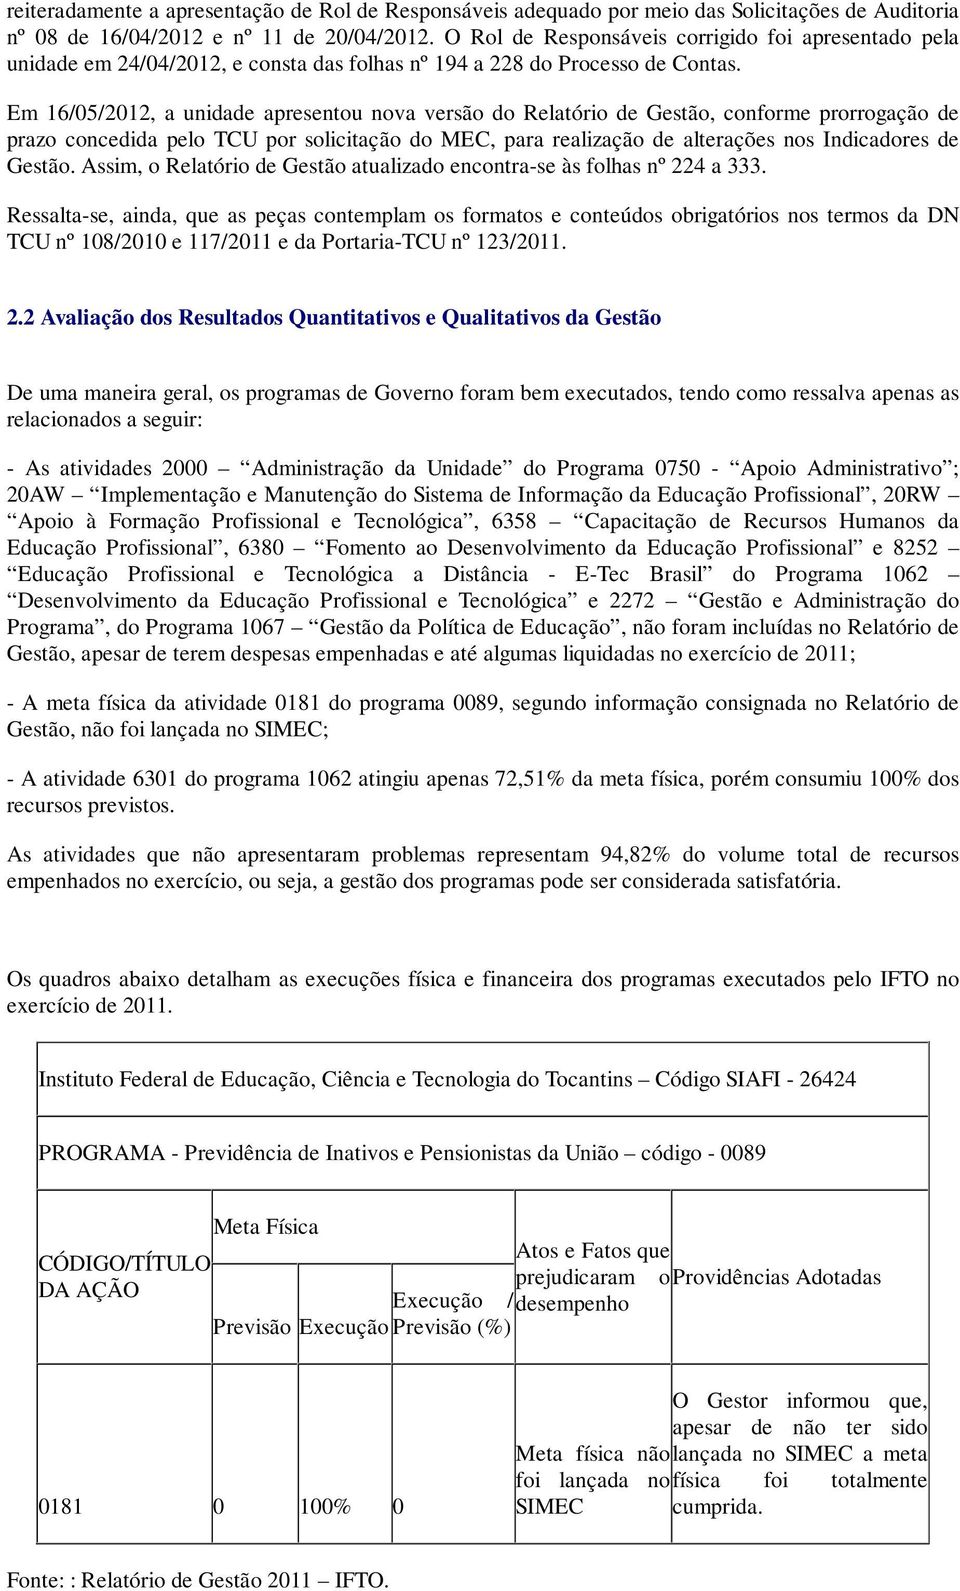 Em 16/05/2012, a unidade apresentou nova versão do Relatório de Gestão, conforme prorrogação de prazo concedida pelo TCU por solicitação do MEC, para realização de alterações nos Indicadores de